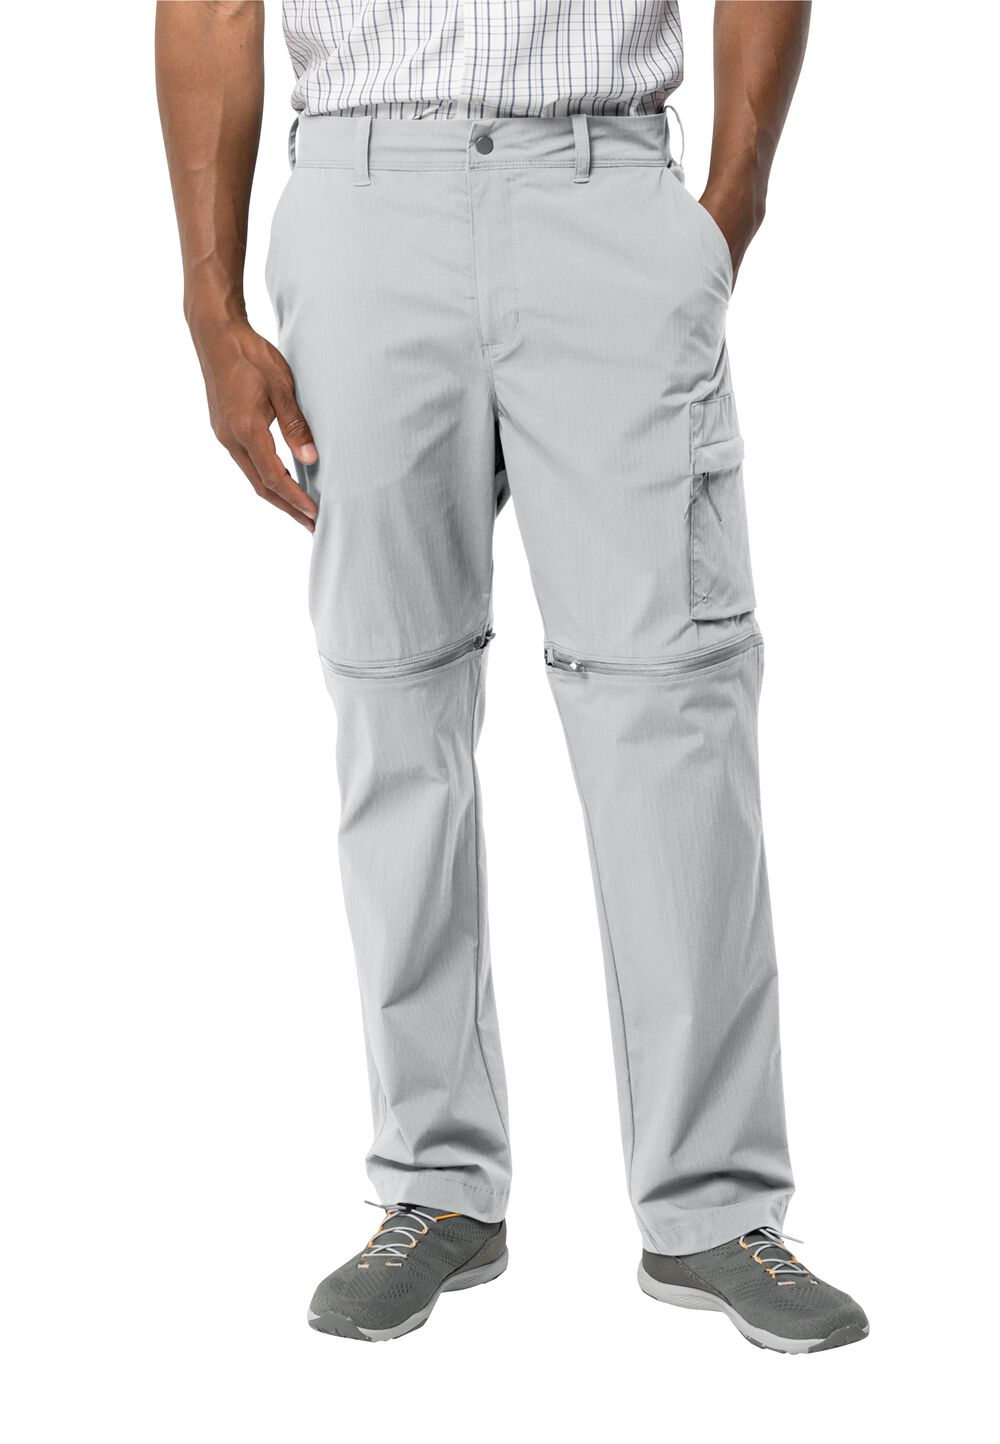 Jack Wolfskin Wanderthirst Zip Pants Men Zip-Off-broek Heren 54S grijs cool grey